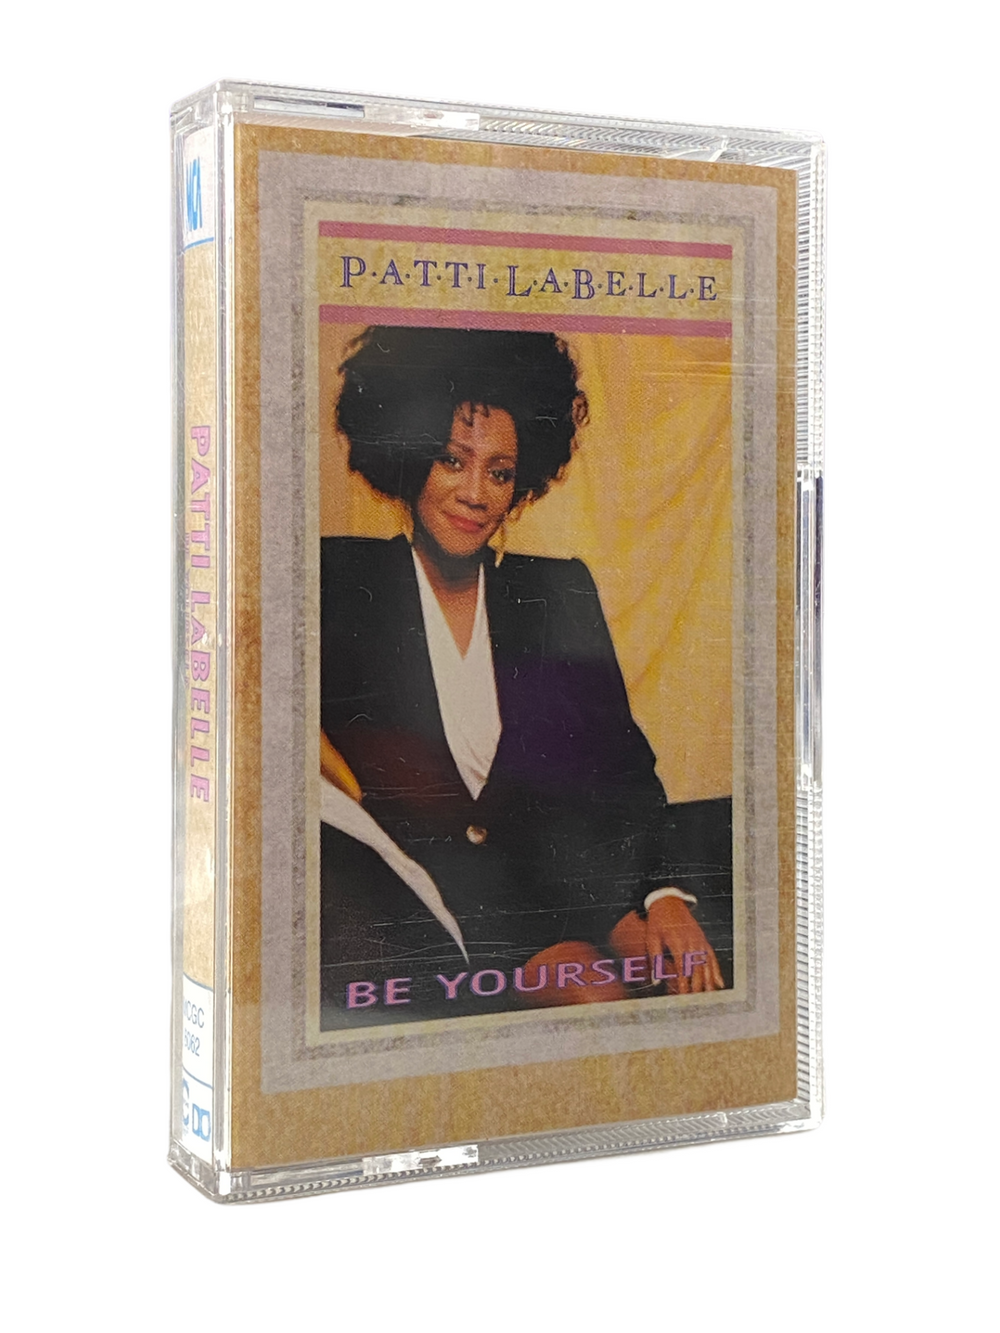 Prince – Patti Labelle Be Yourself Cassette Album EU Preloved: 1989